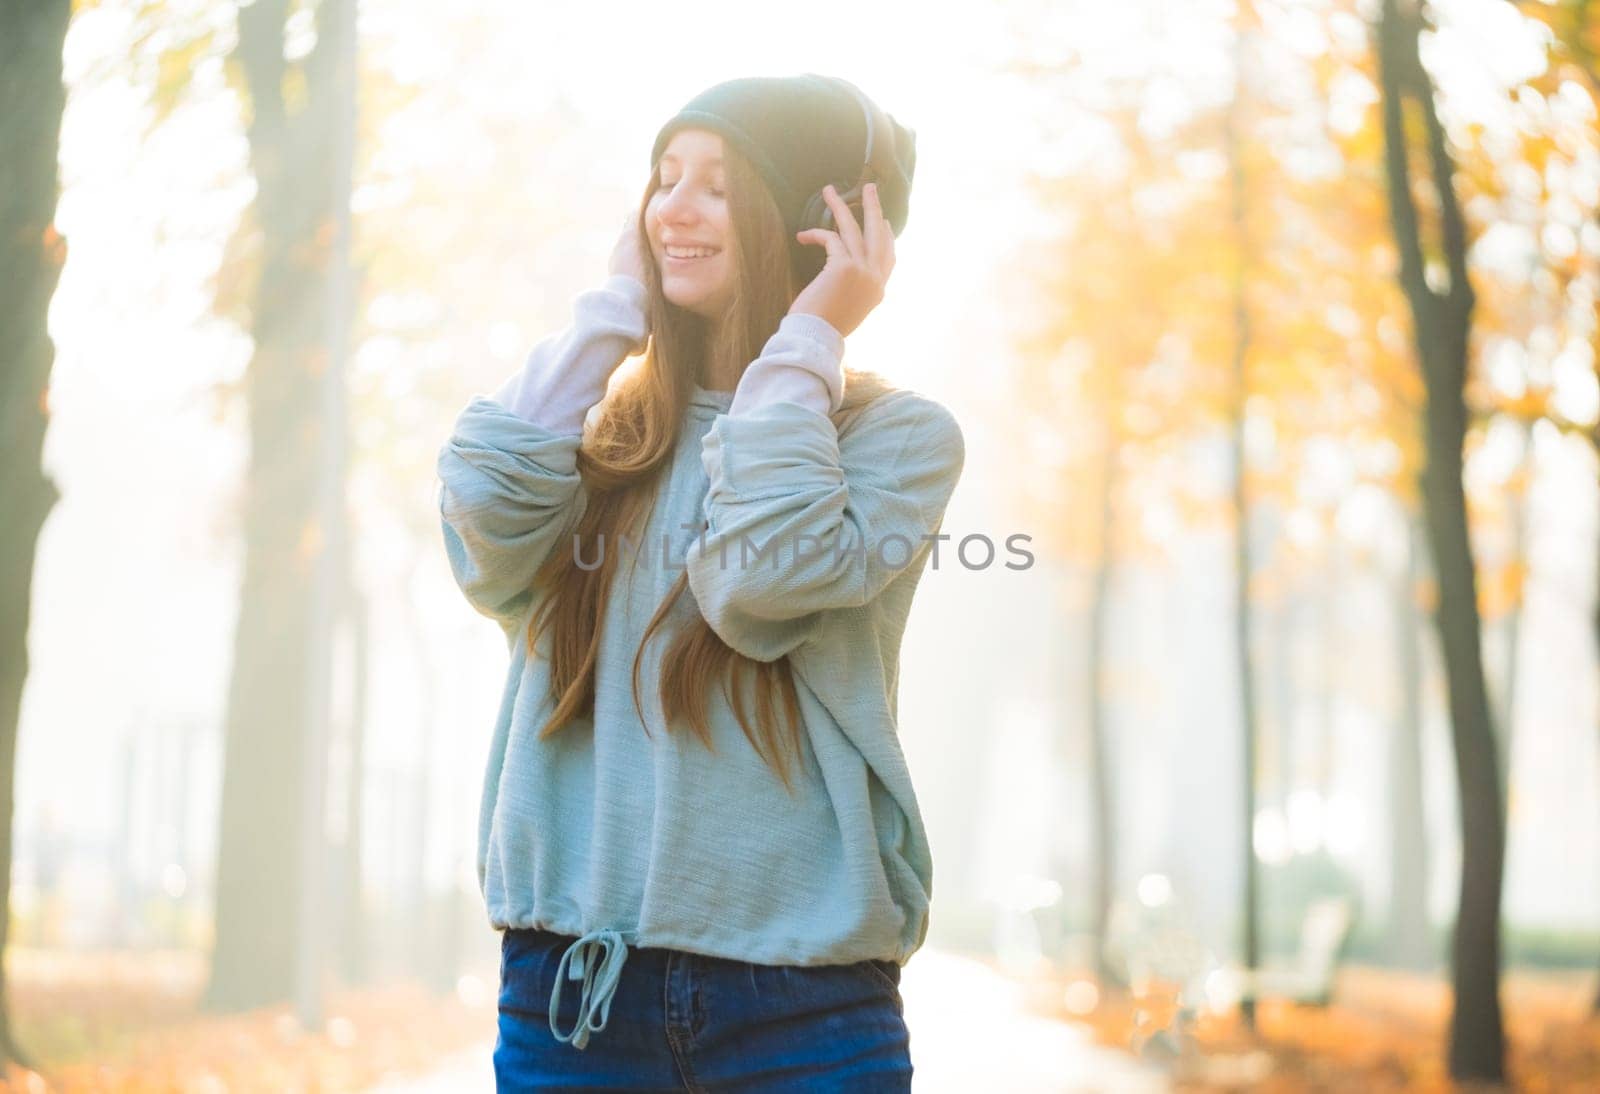 Attractive girl in headphones by GekaSkr